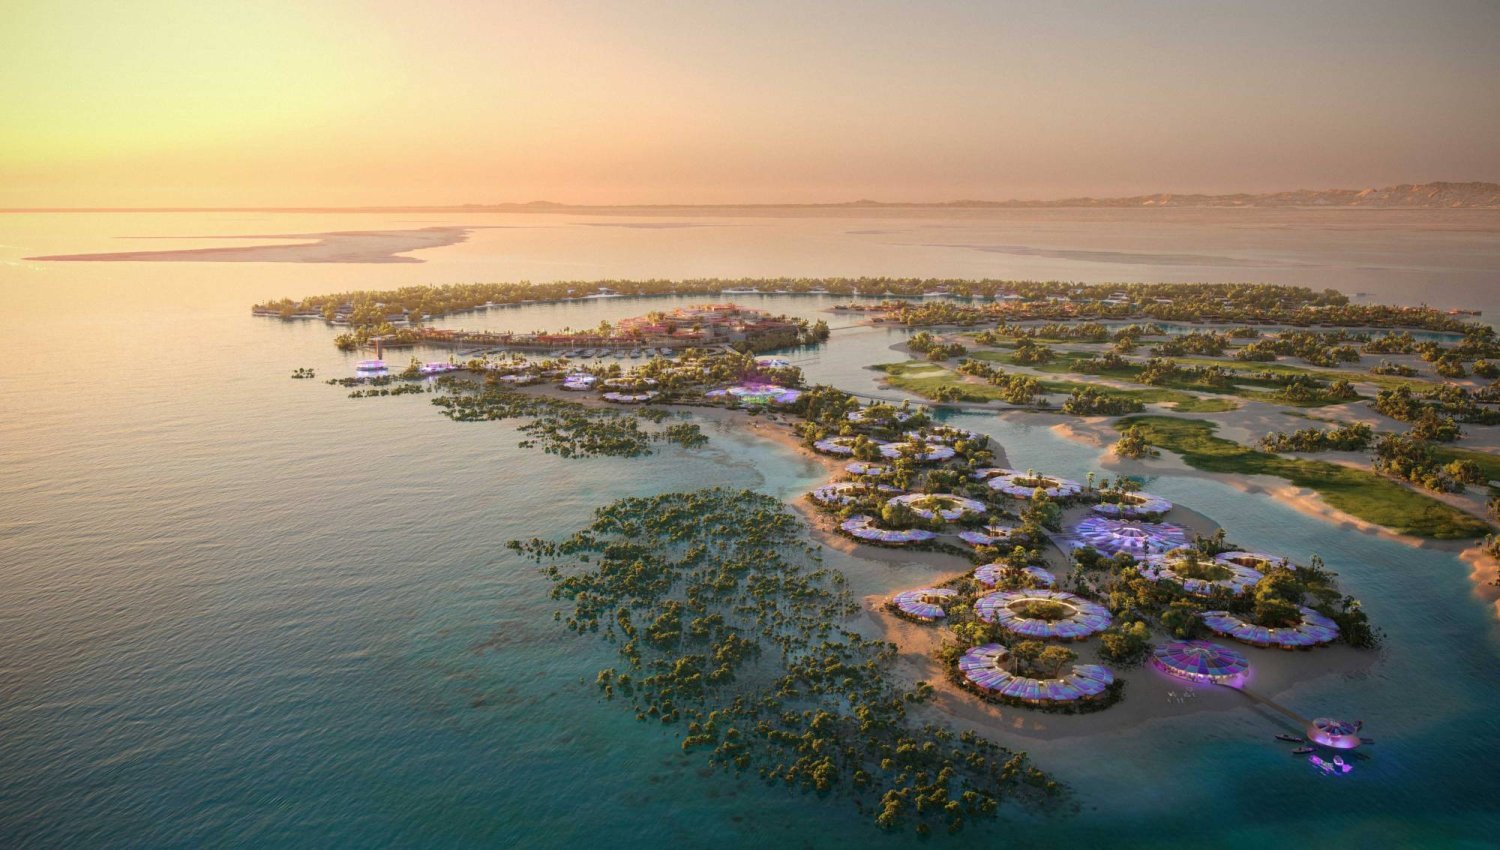 مشروع البحر الأحمر من الوجهات السياحية الكبيرة في السعودية (الشرق الأوسط)